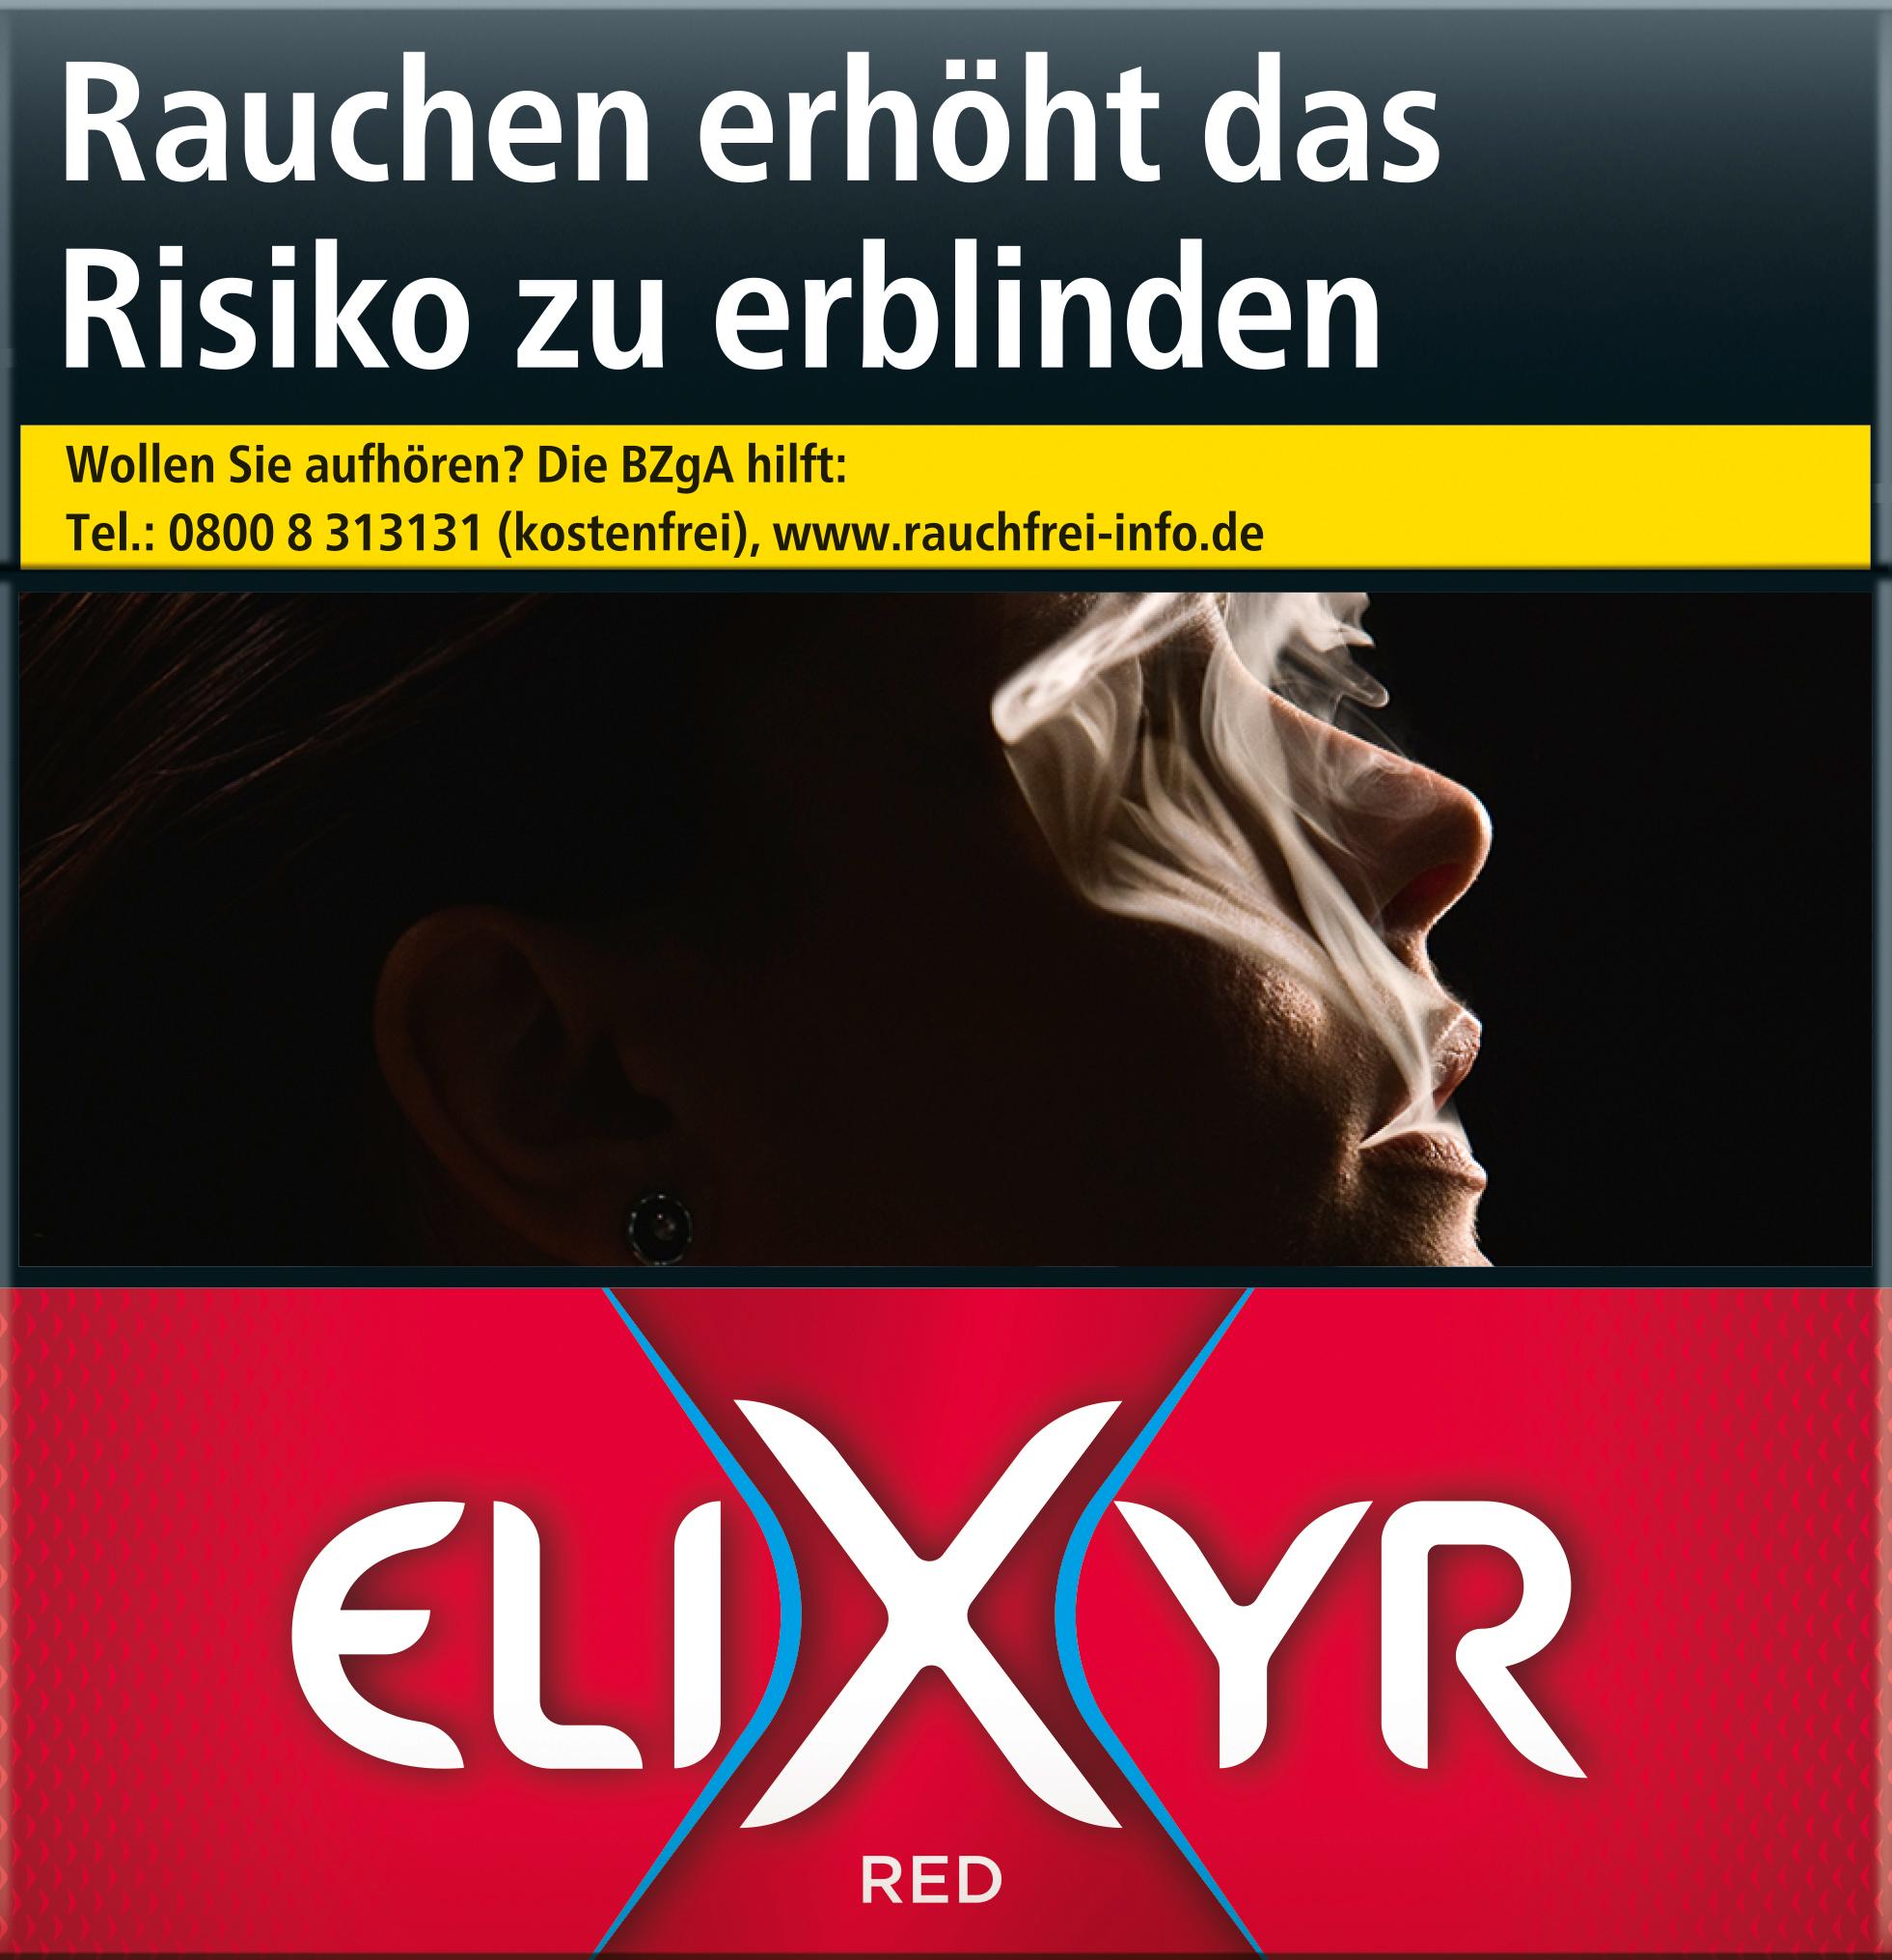 Elixyr Red 5XL 15 Euro